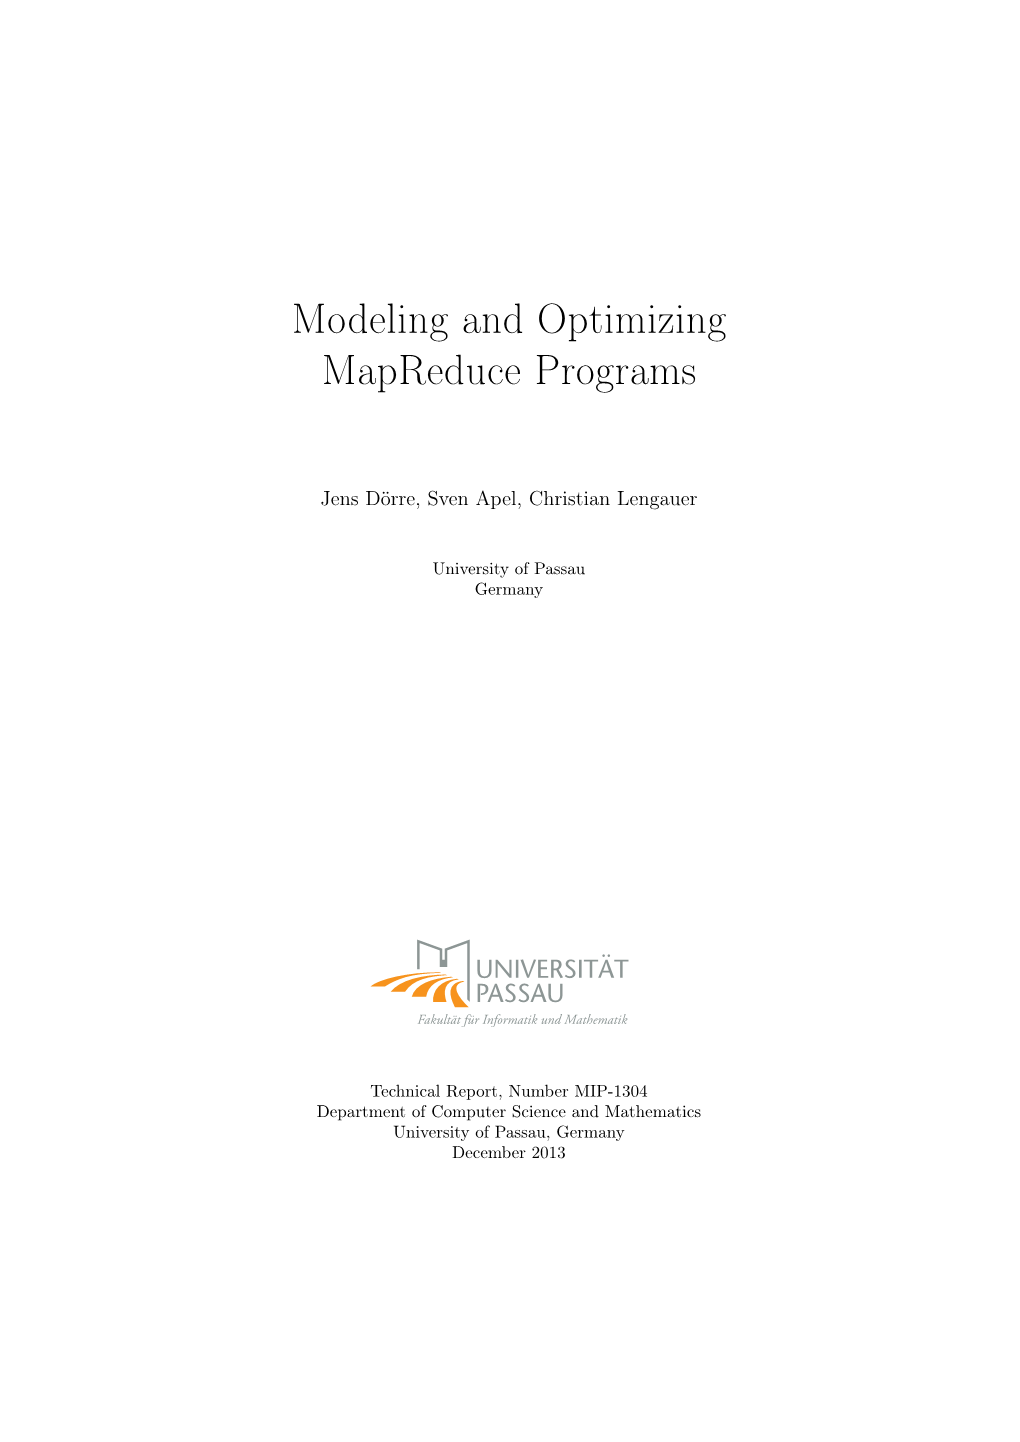 Modeling and Optimizing Mapreduce Programs